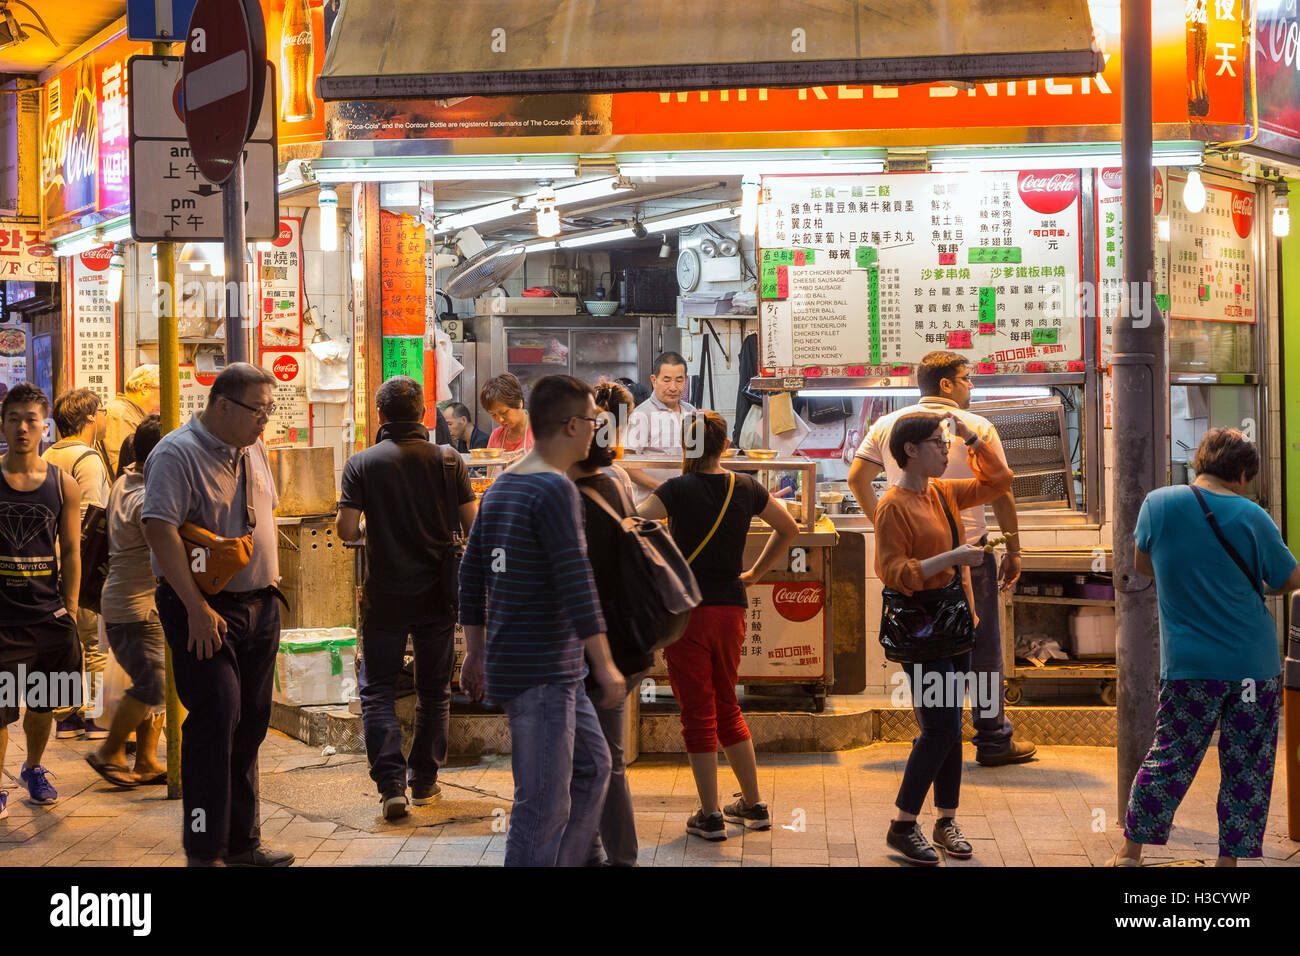 Menschen vor ein street Food stall am Rand Prat Ave und Hart Ave in Tsim Sha Tsui, Kowloon, Hong Kong, China in der Nacht. Stockfoto